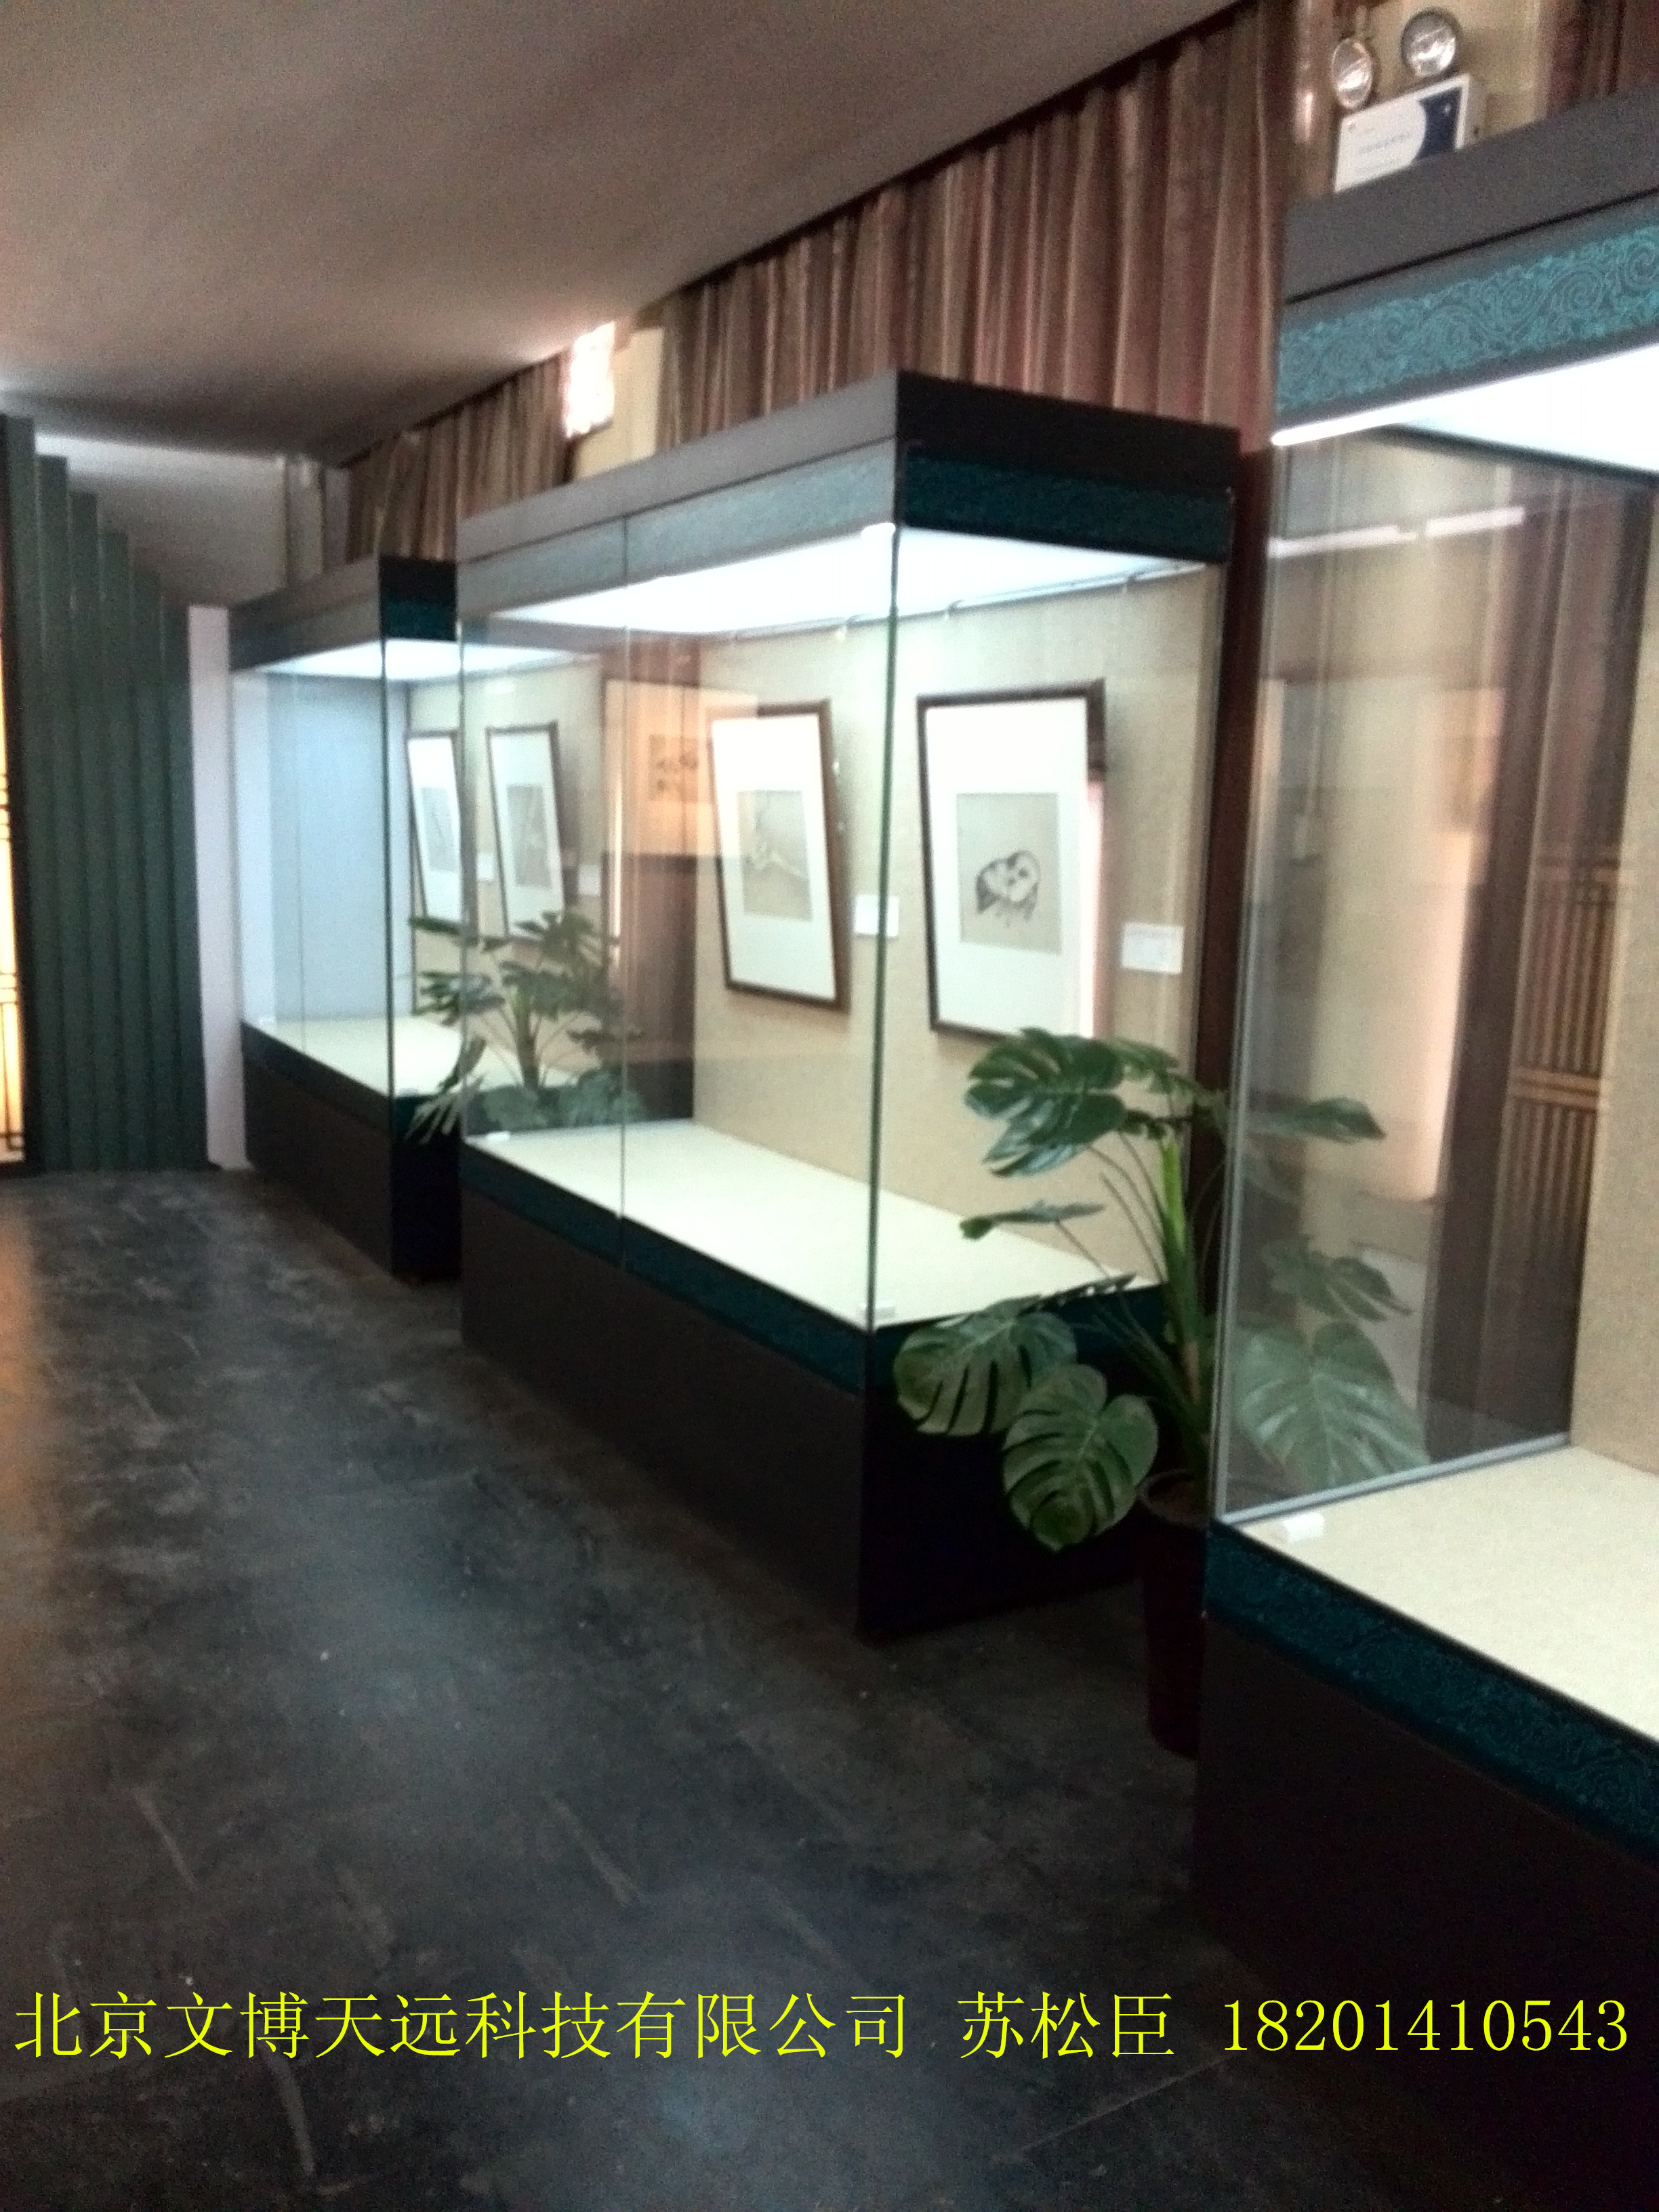 供应博物馆文物展示柜及展示柜主要材质工艺介绍图片